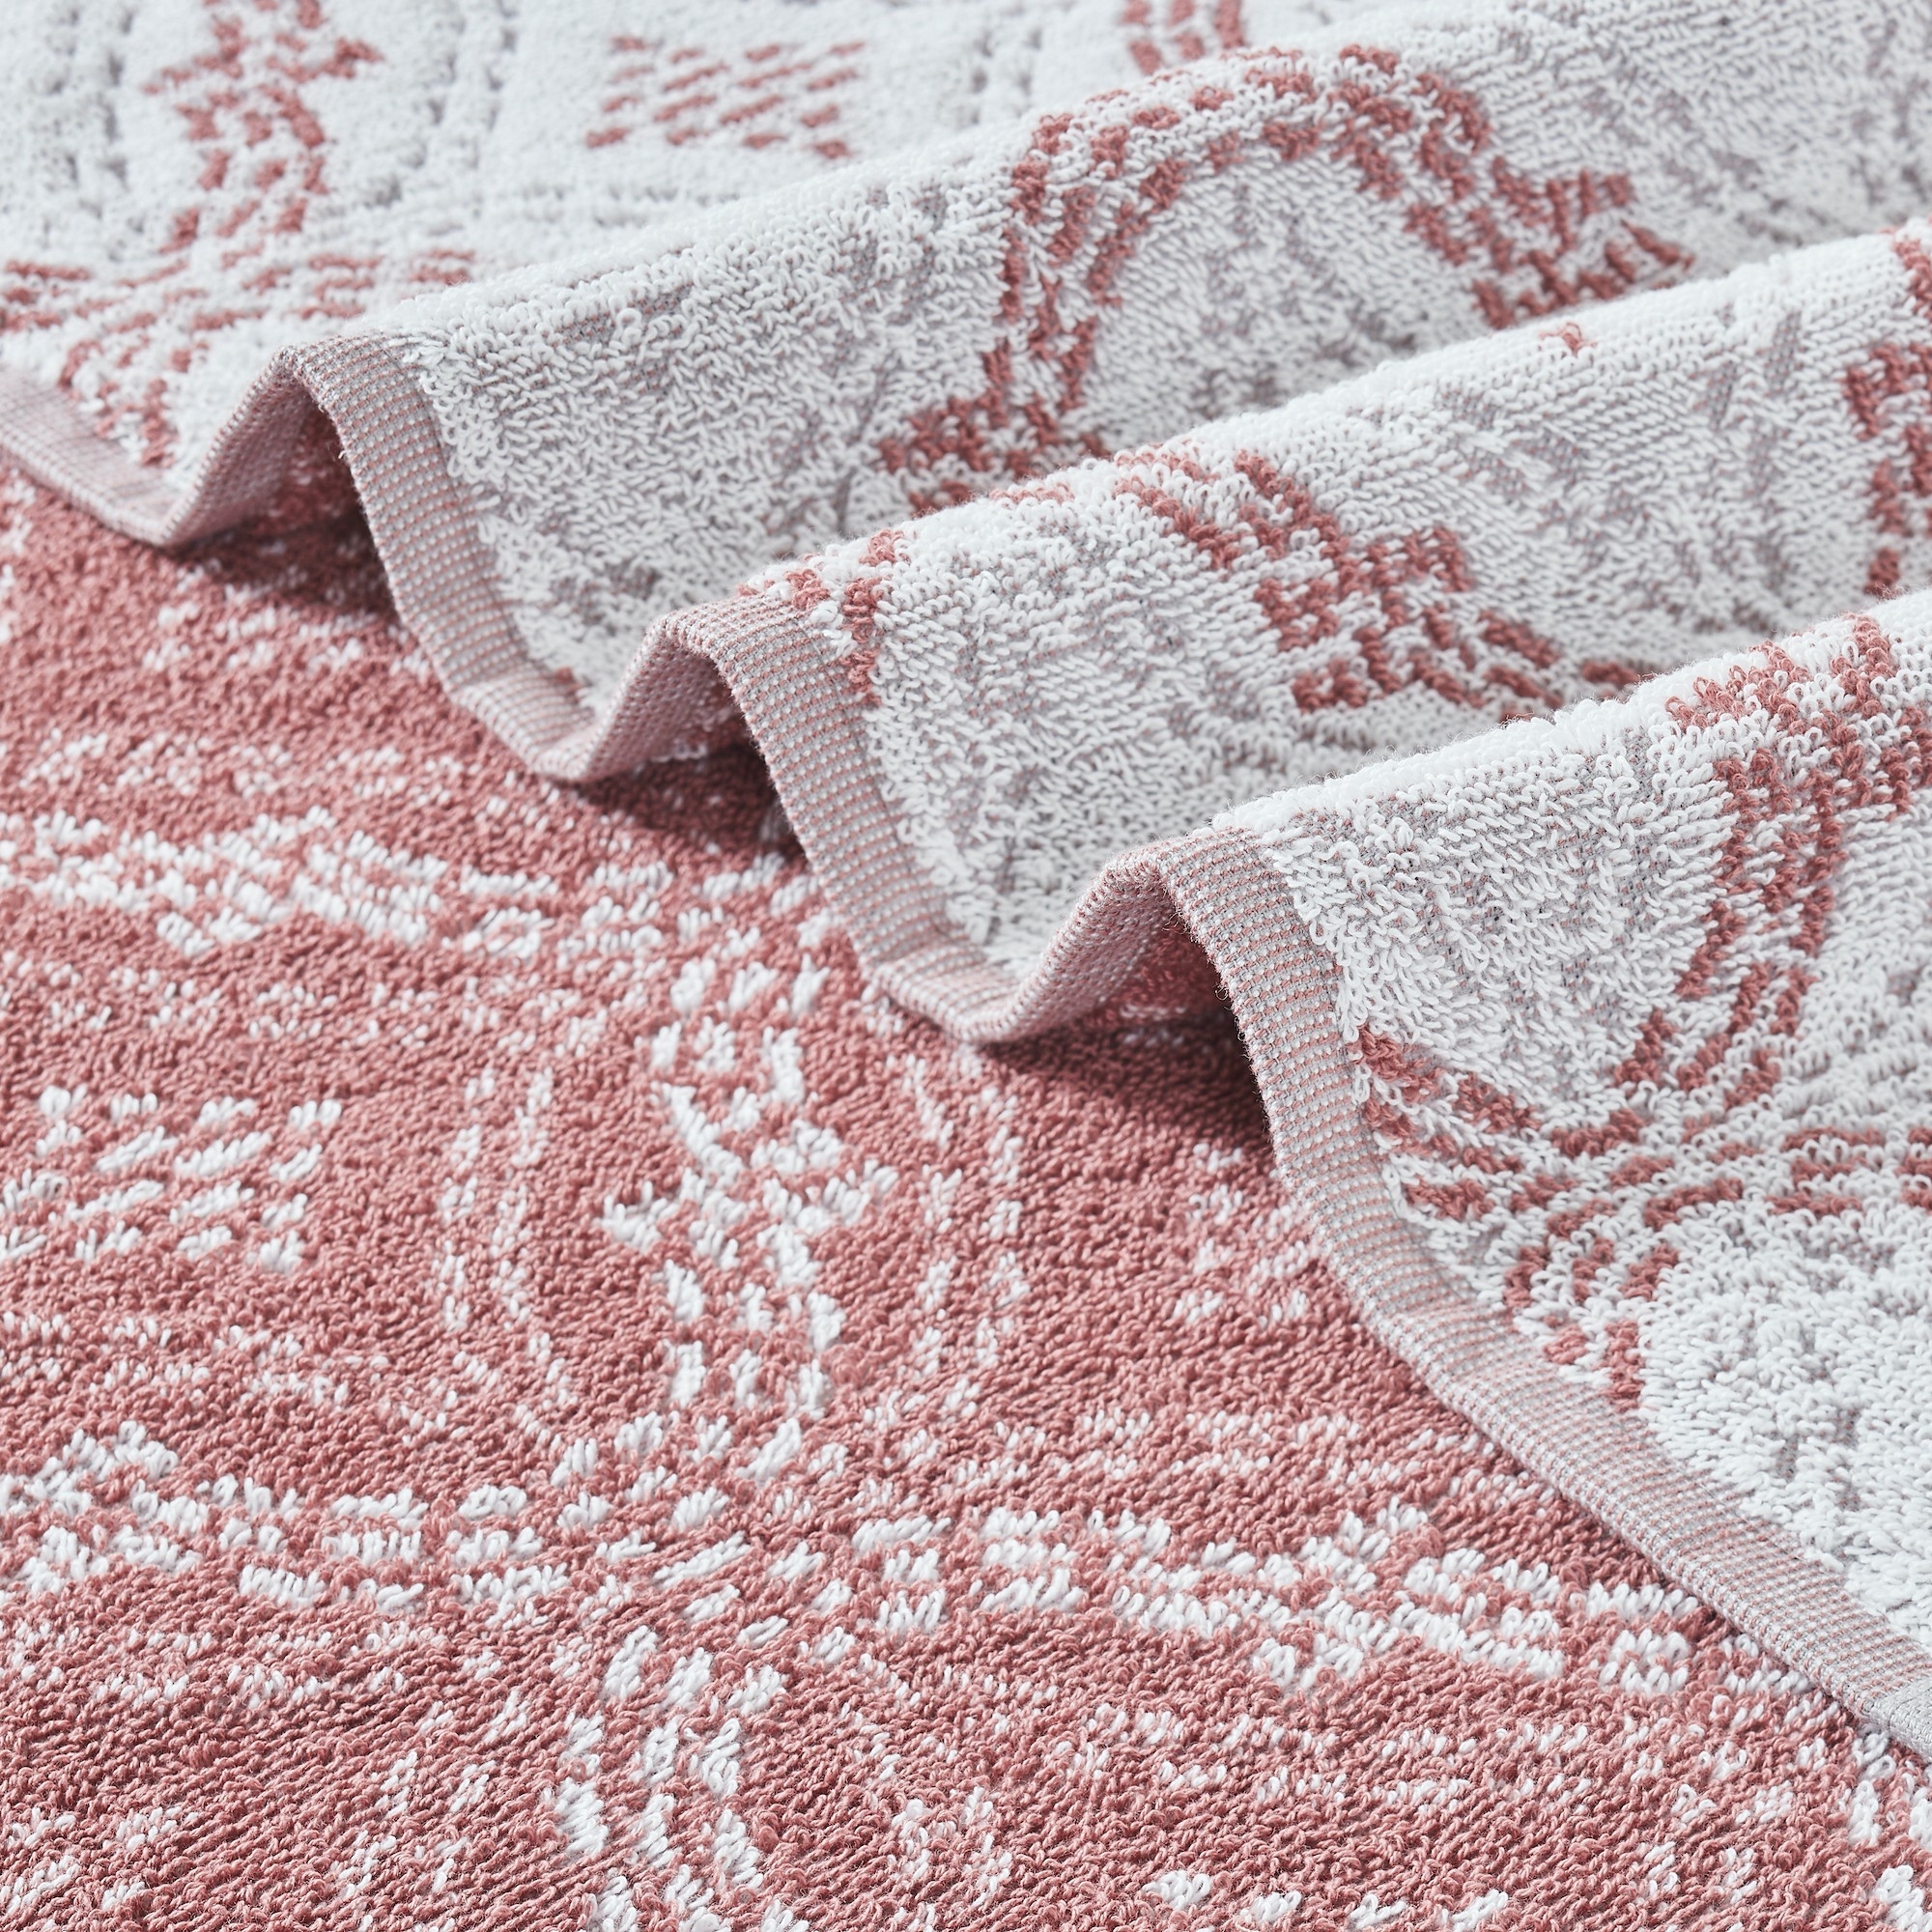 Oya 6pc Cotton Towel Set, Quatrefoil, White, Pink By The Urban Port- Saltoro Sherpi